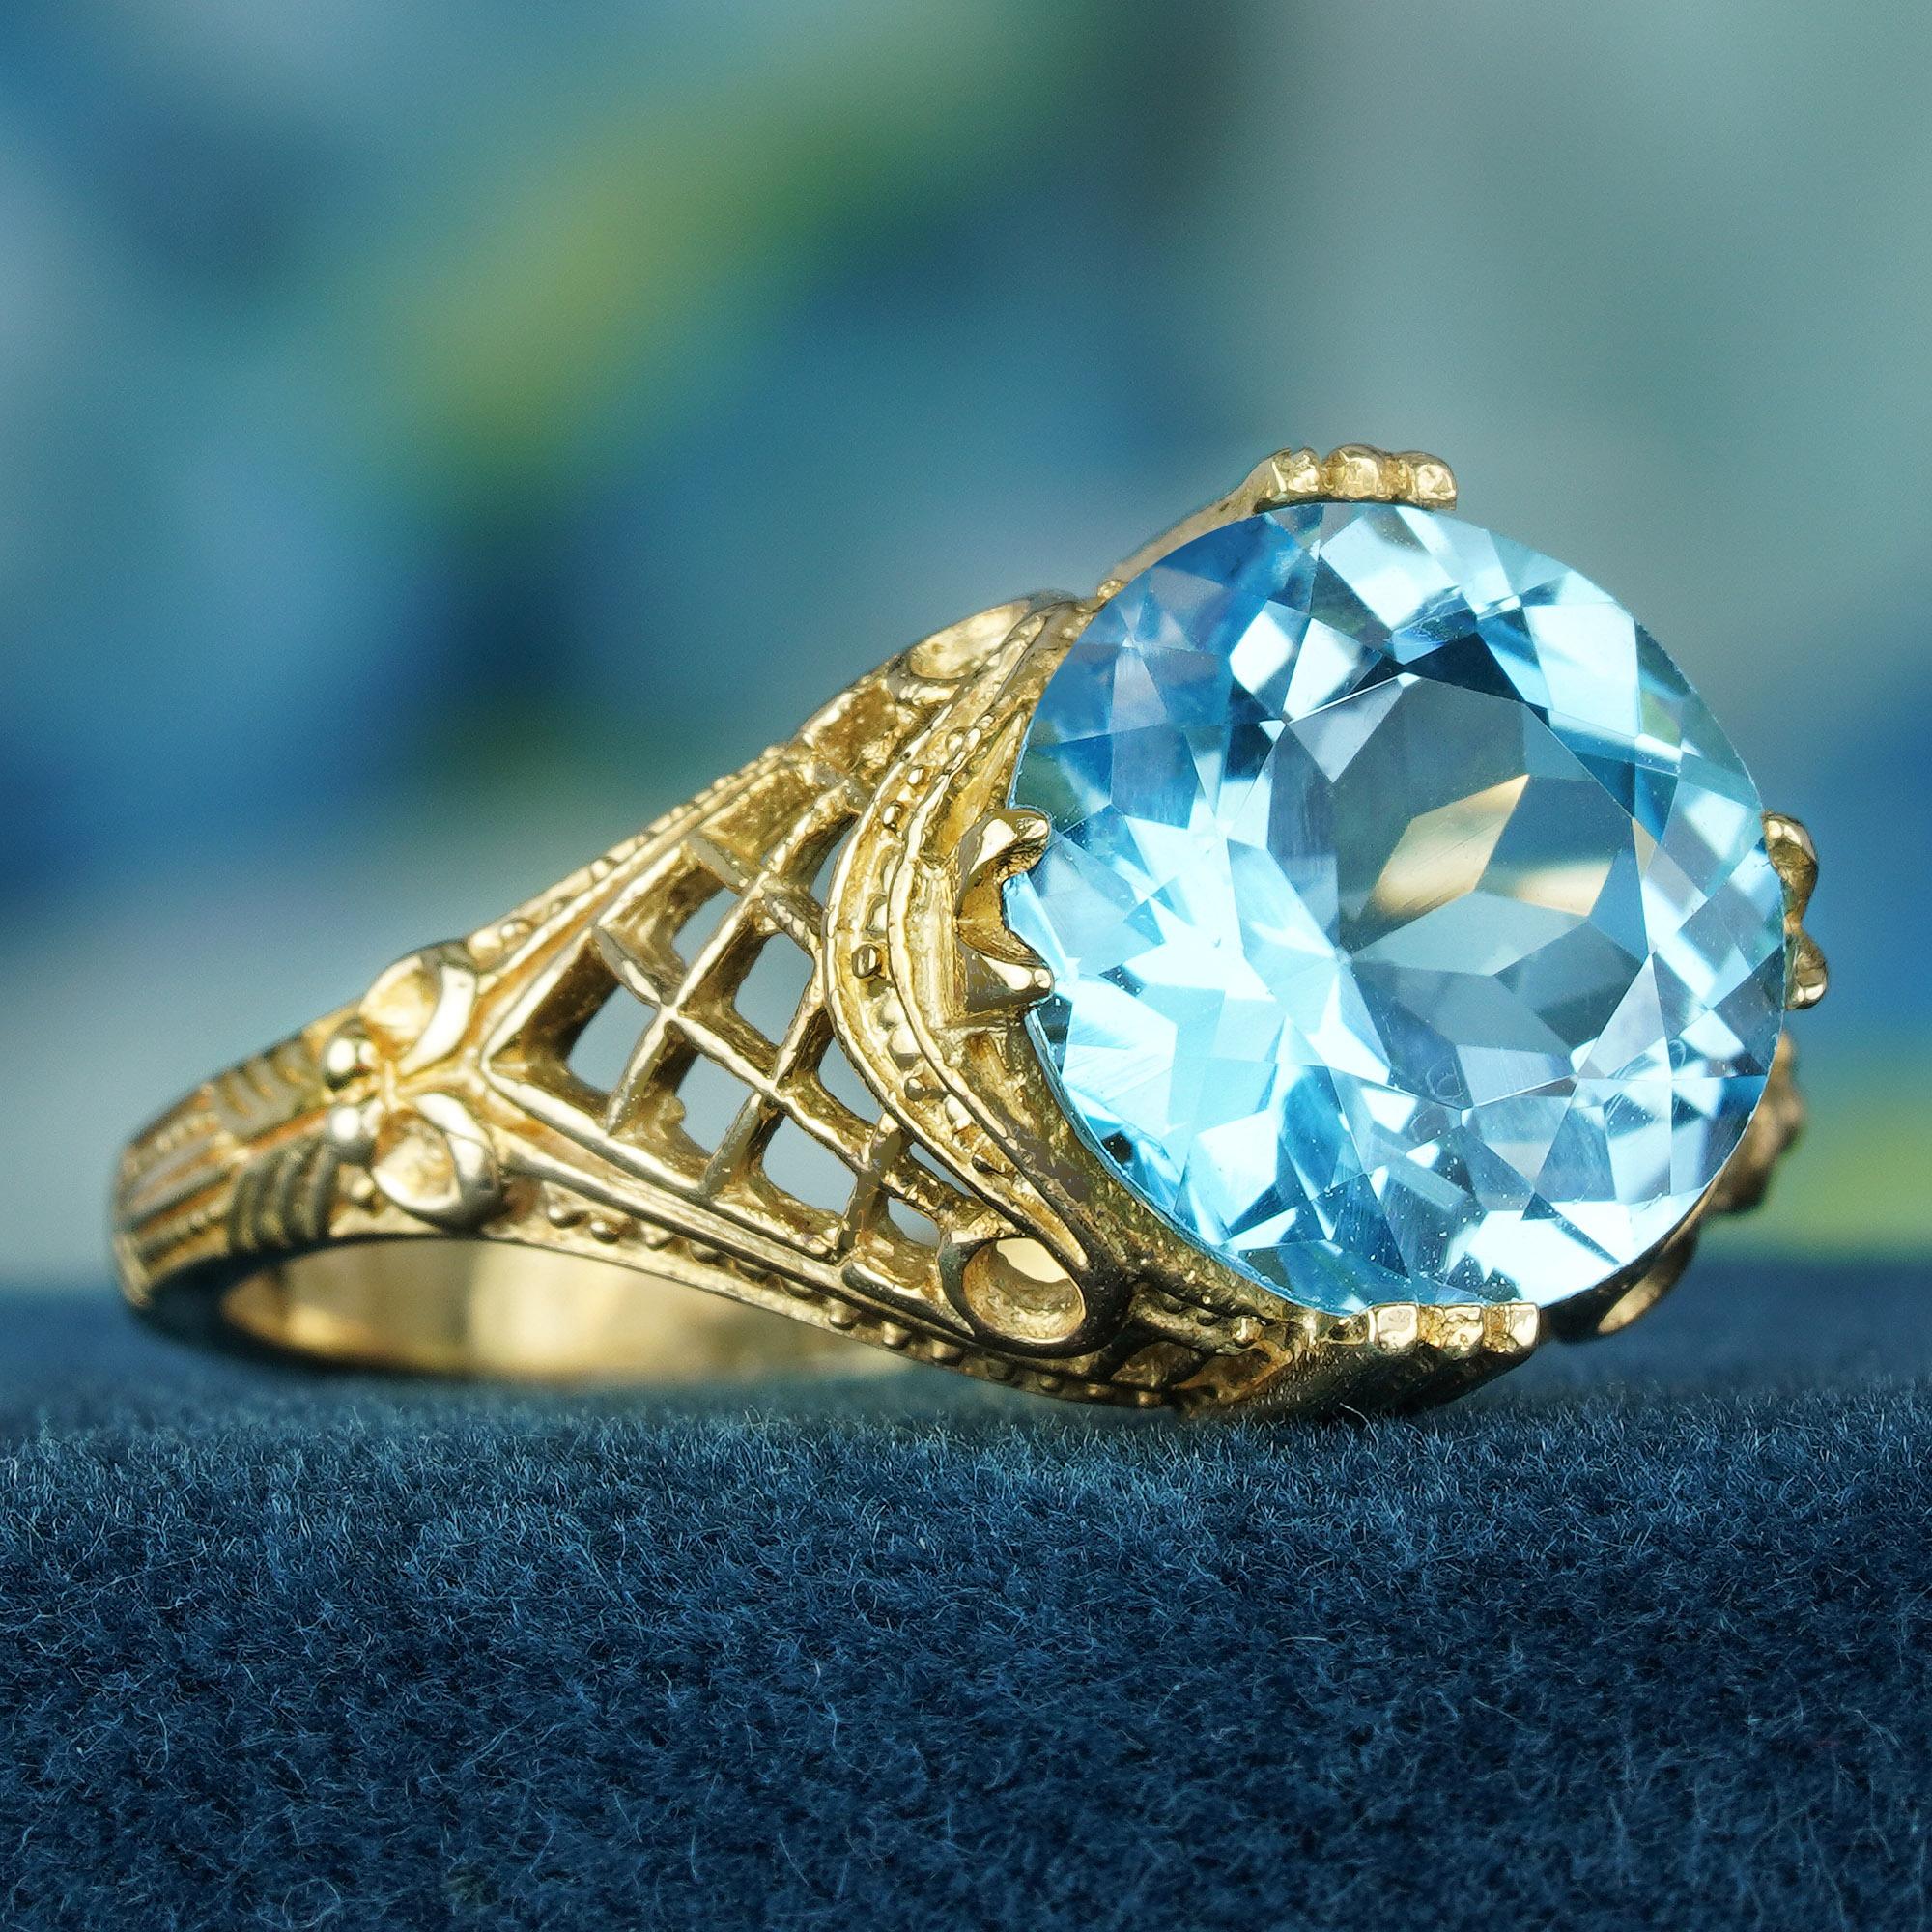 Tout en affichant des détails captivants, la bague en topaze bleue de 4,5 carats rayonne sans effort un sens durable de l'élégance. L'allure intemporelle est obtenue grâce à la combinaison d'un bracelet traditionnel en or jaune, d'un motif filigrané